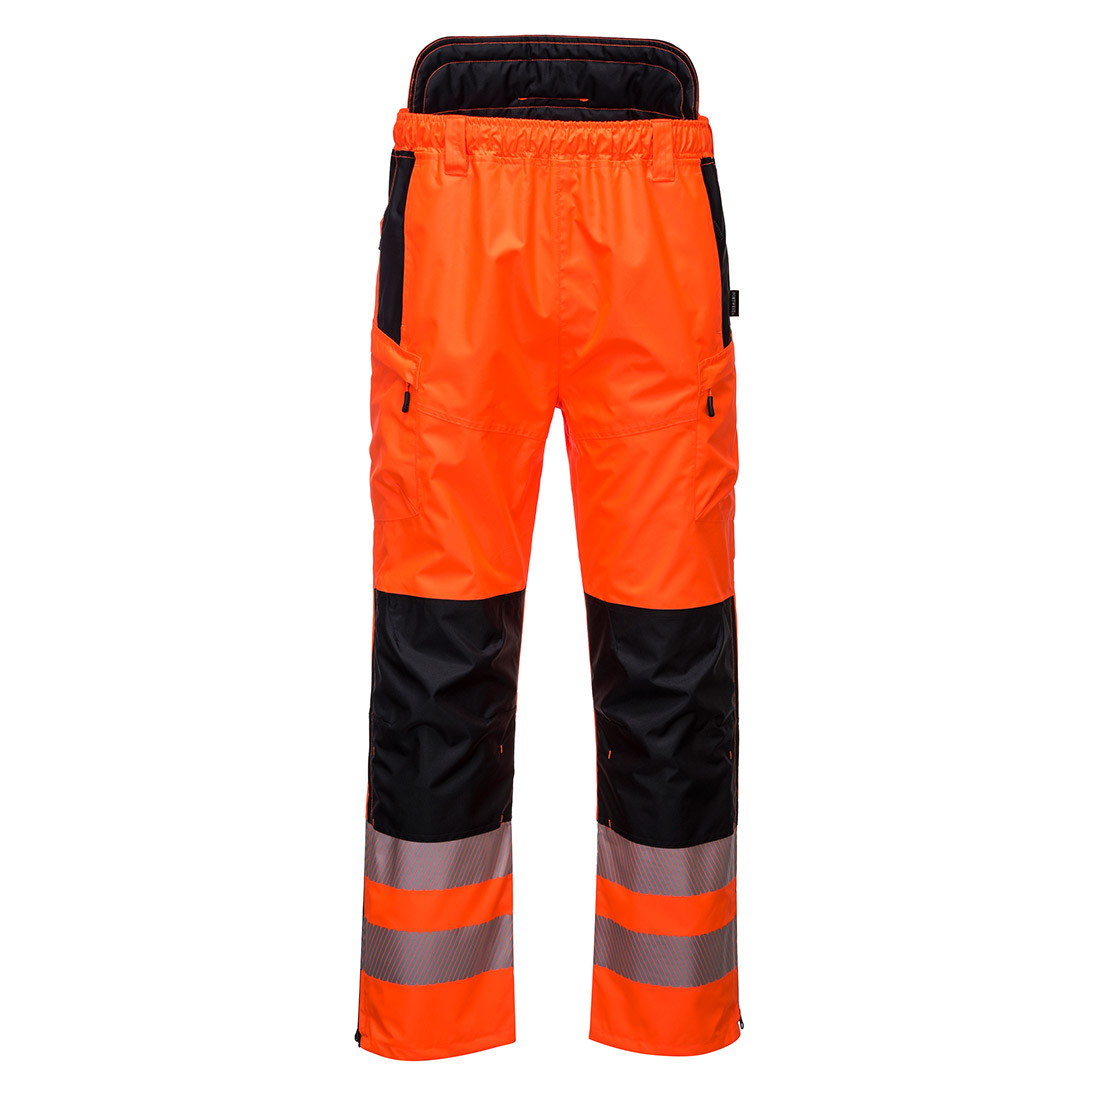 Pantalon extrême haute visibilité PW3 - Les vêtements de protection